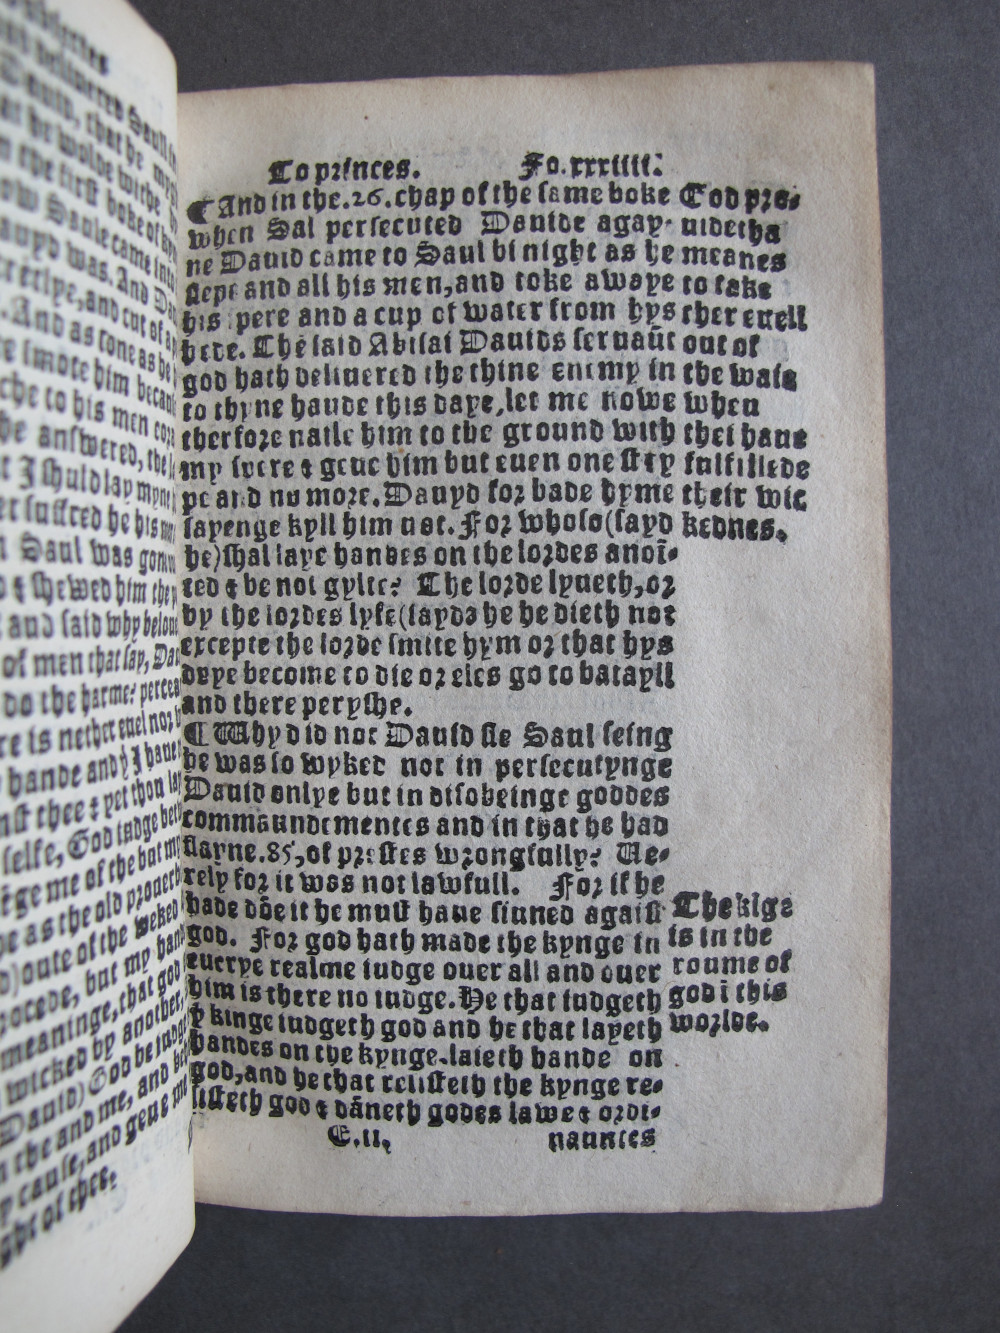 1 Folio E2 recto